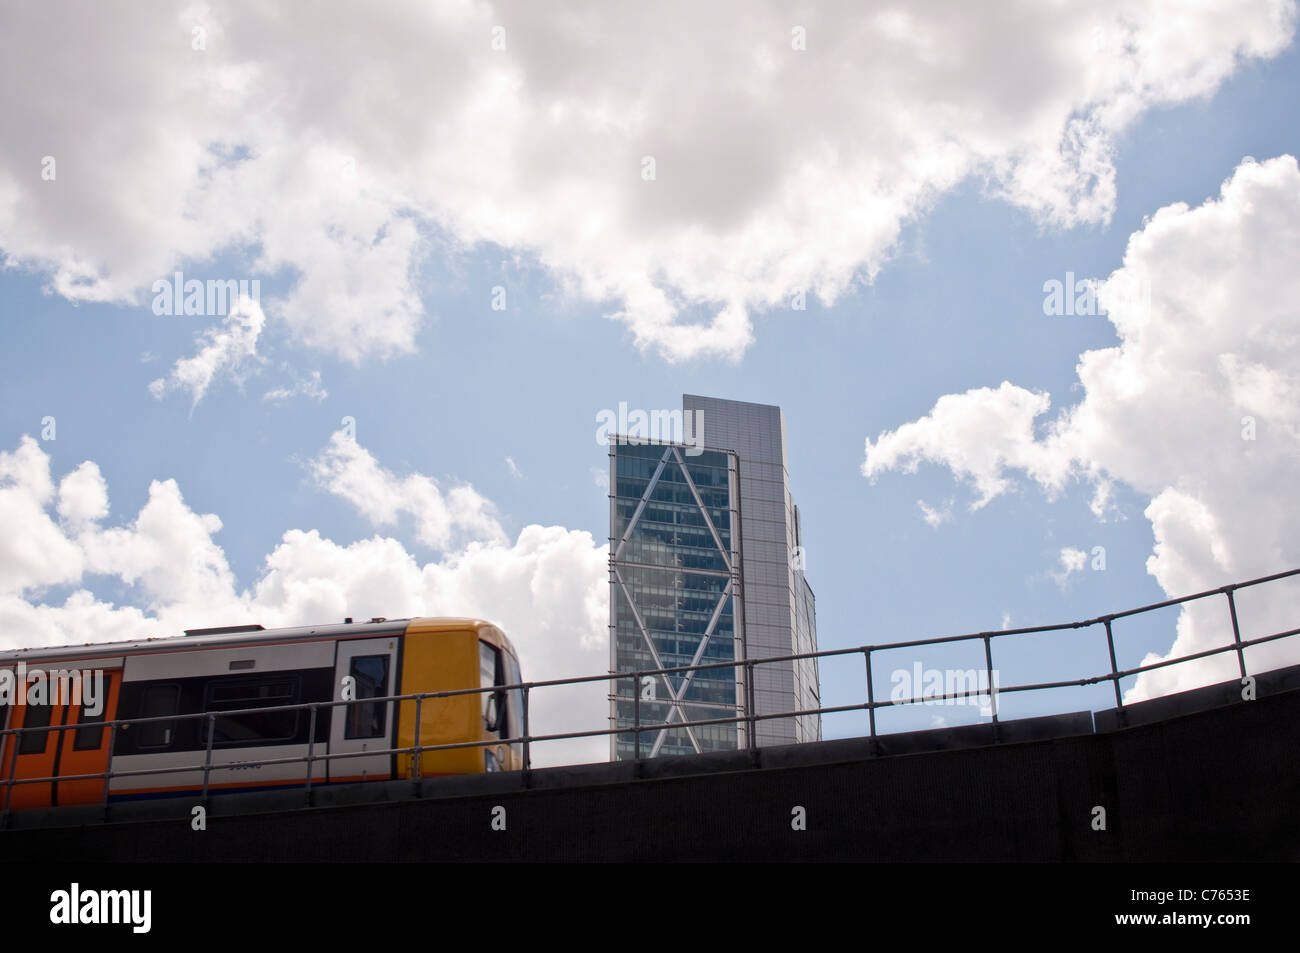 Un train sur le nouveau prolongement de la ligne de l'Est de Londres en passant par Shoreditch, Hackney. Broadgate Tower est visible en arrière-plan. Banque D'Images